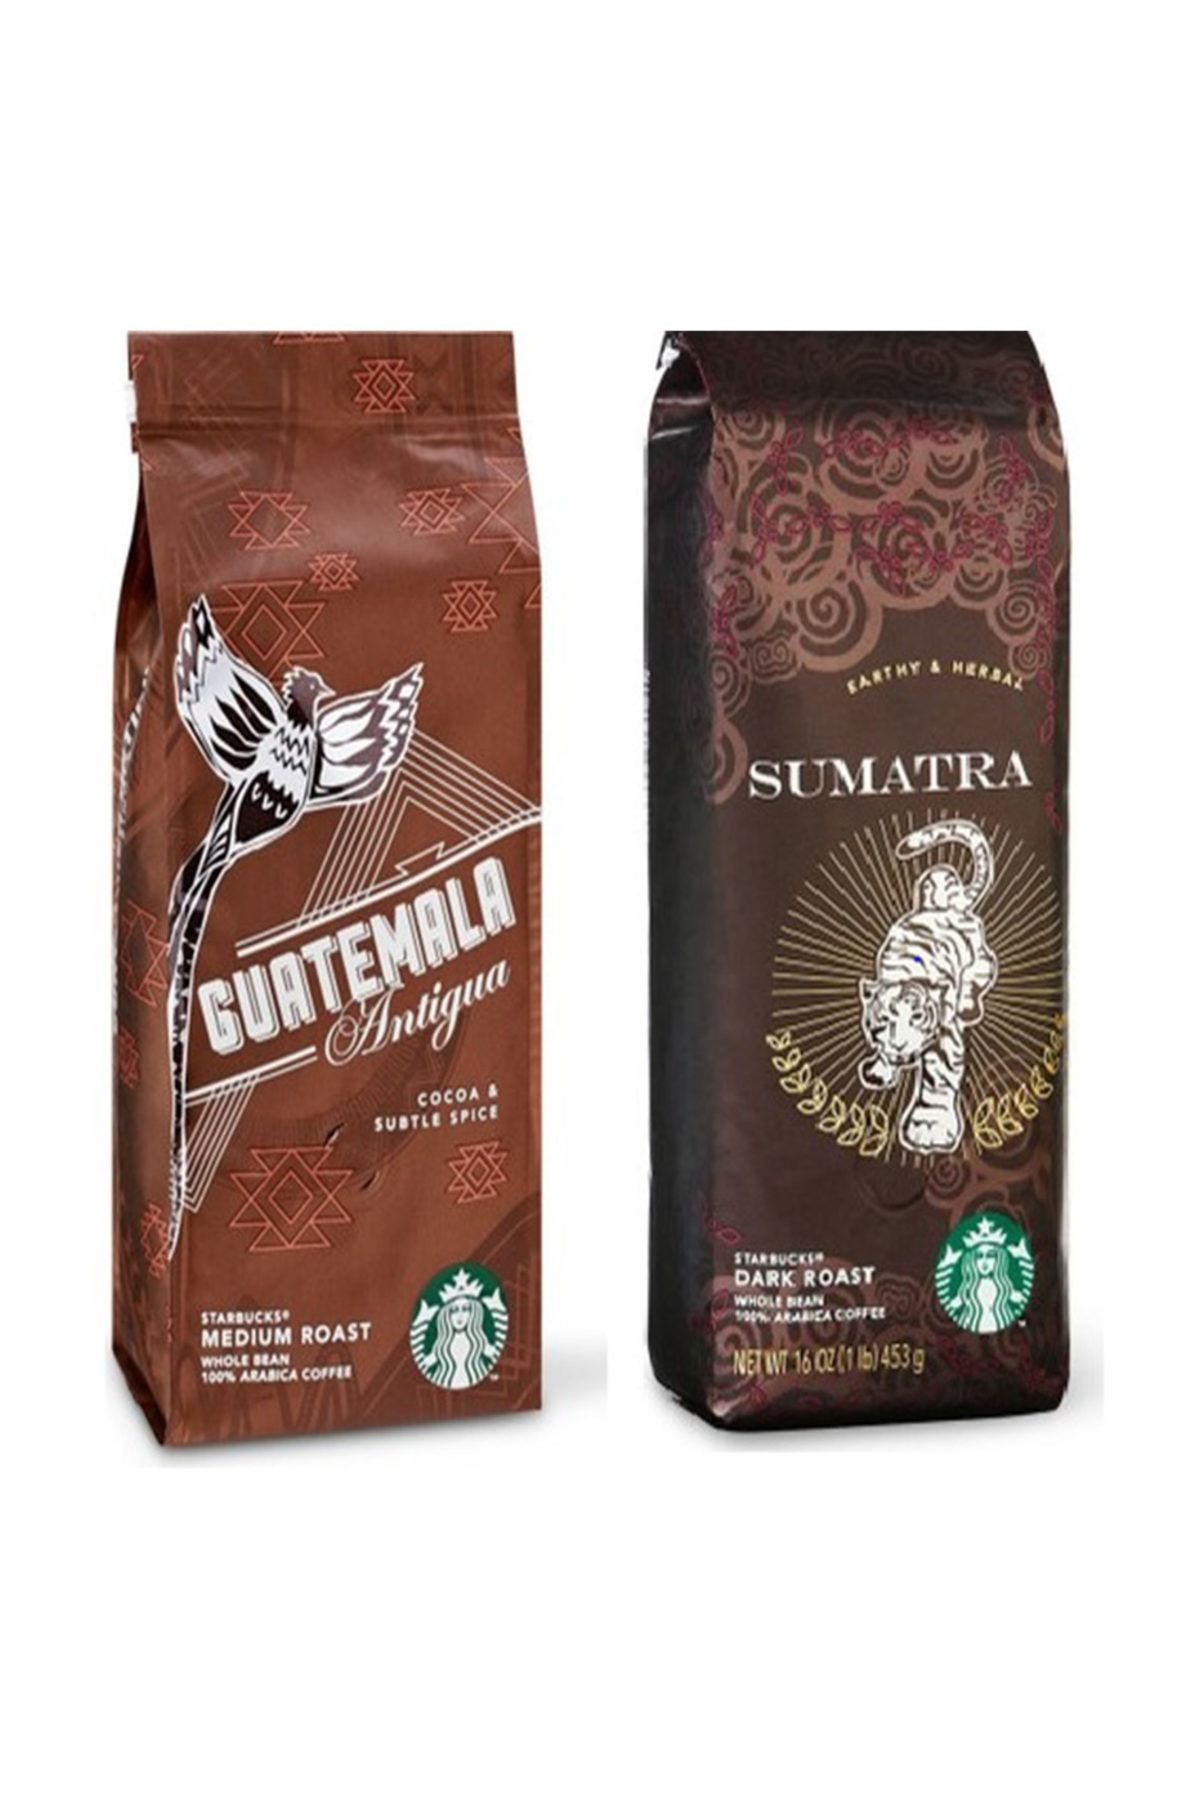 Starbucks Starbucks Guatemala ve Sumatra Filtre Kahve2 Paket 2x250 gr Kahve Makinası İçin Çekilmiş